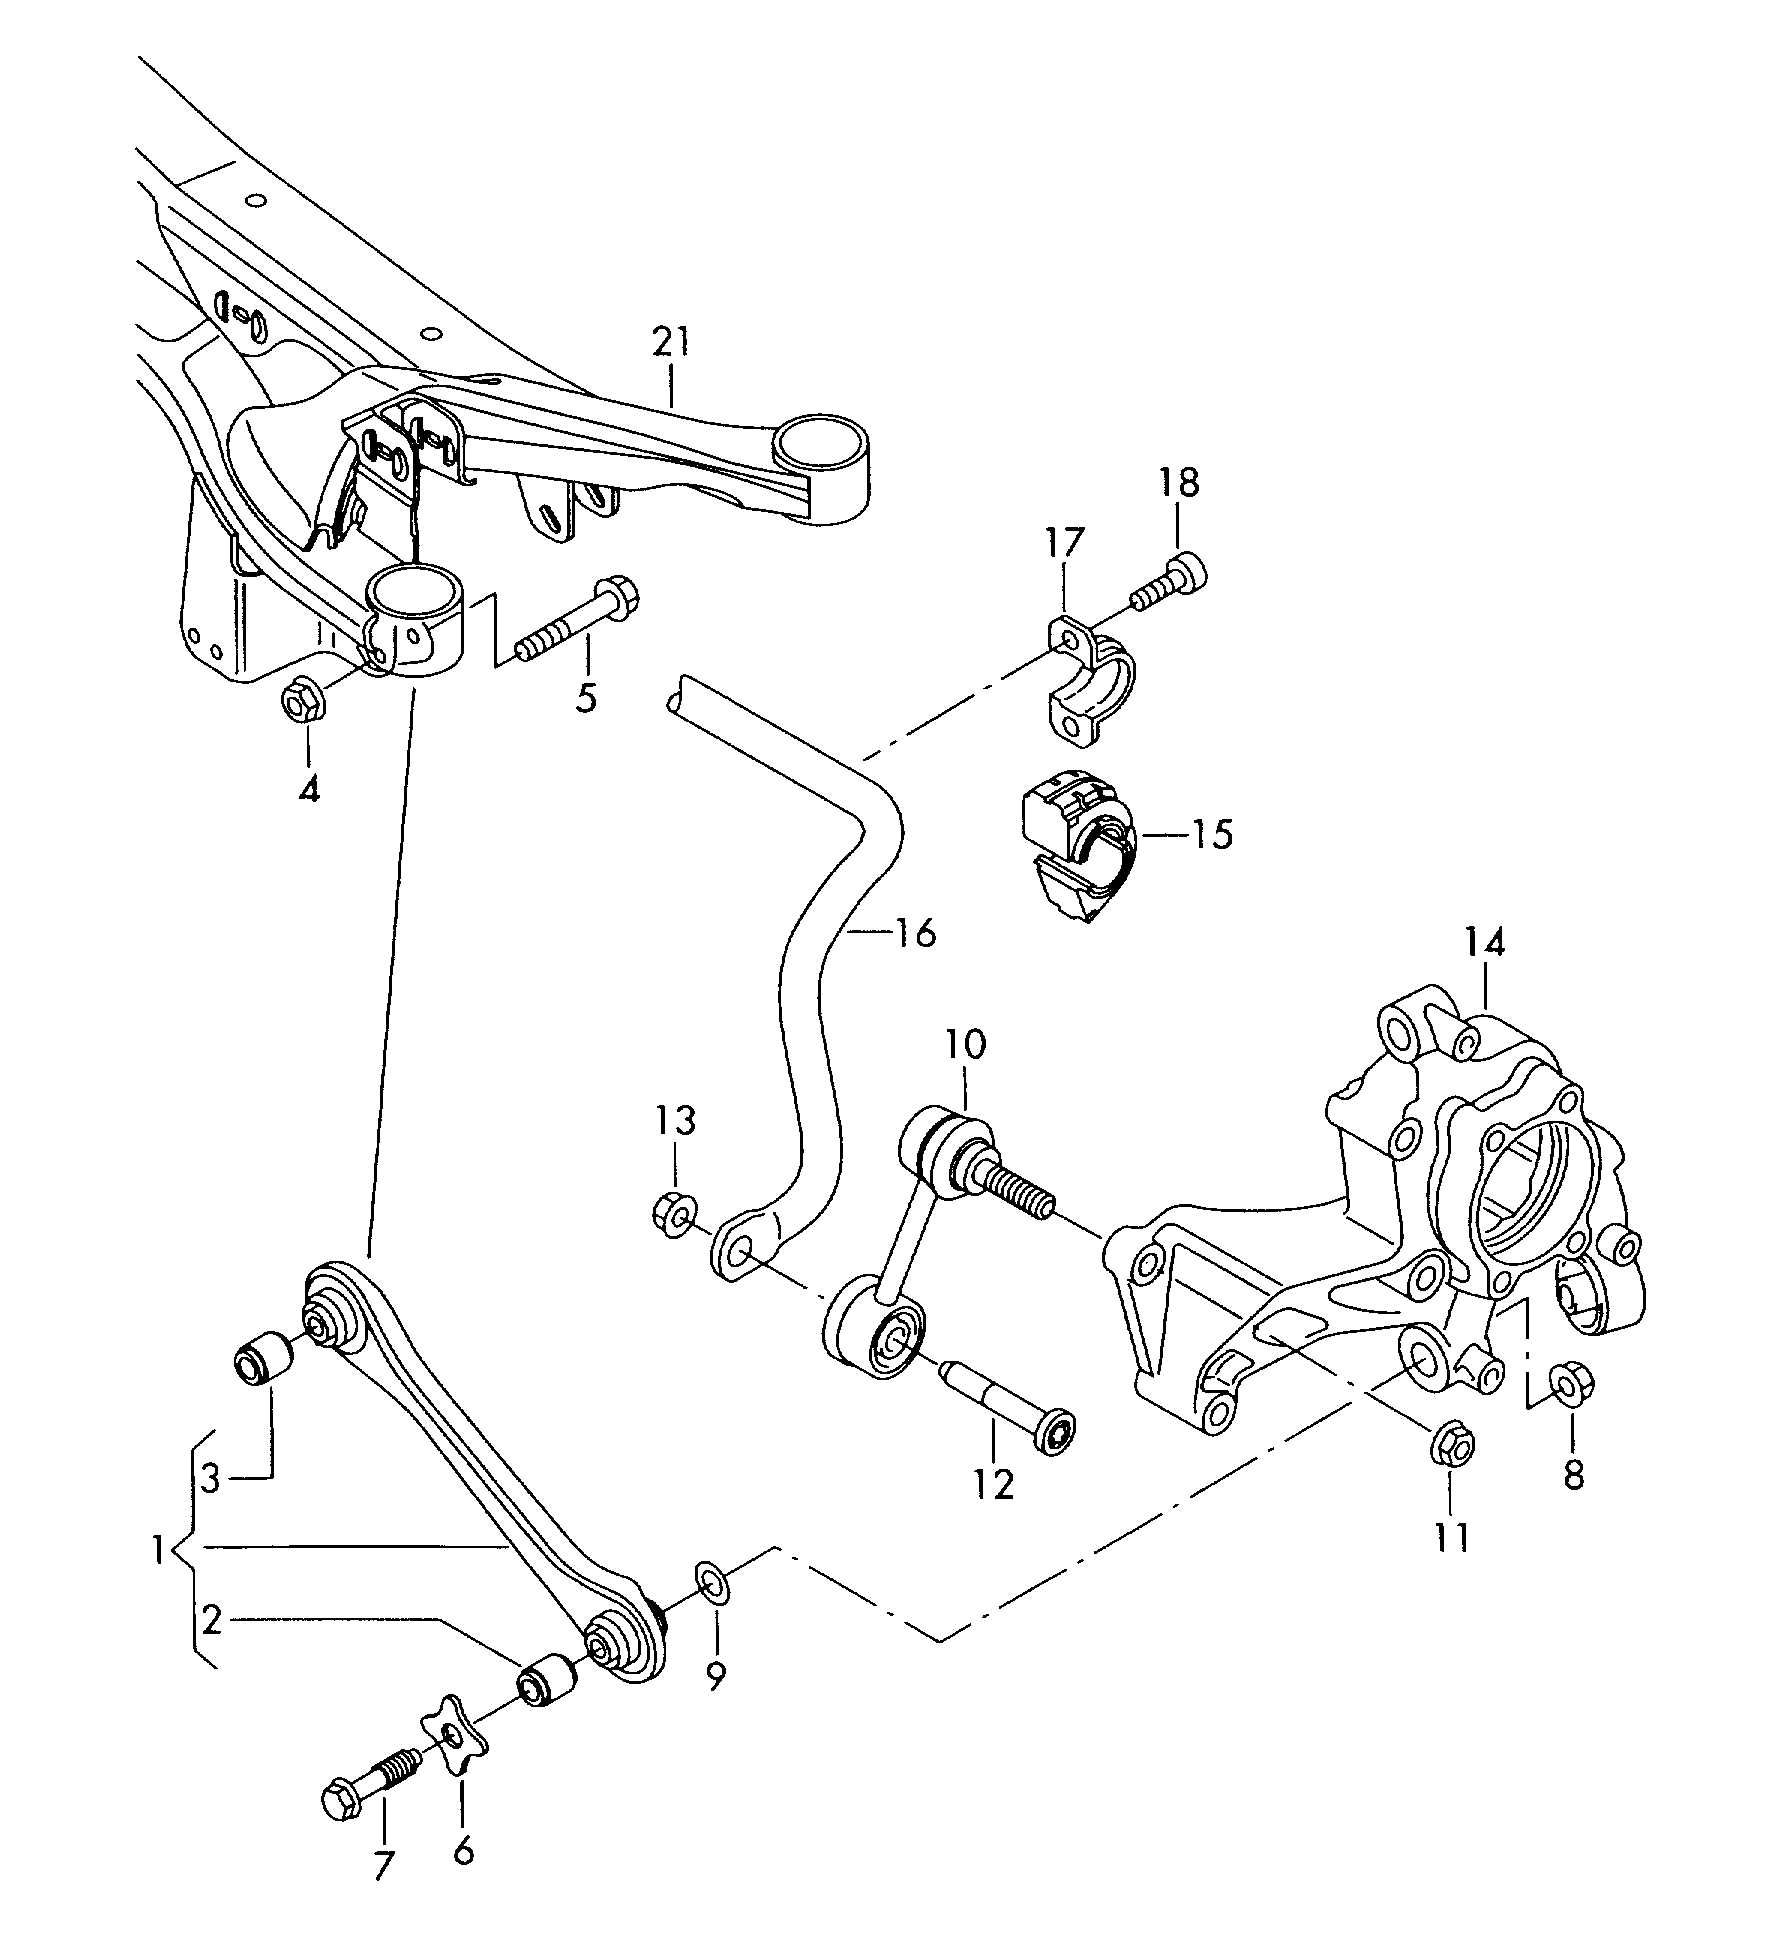 Rot çubuğu; Bağlantı çubuğu; Stabilizatör - Tiguan(TIG)  